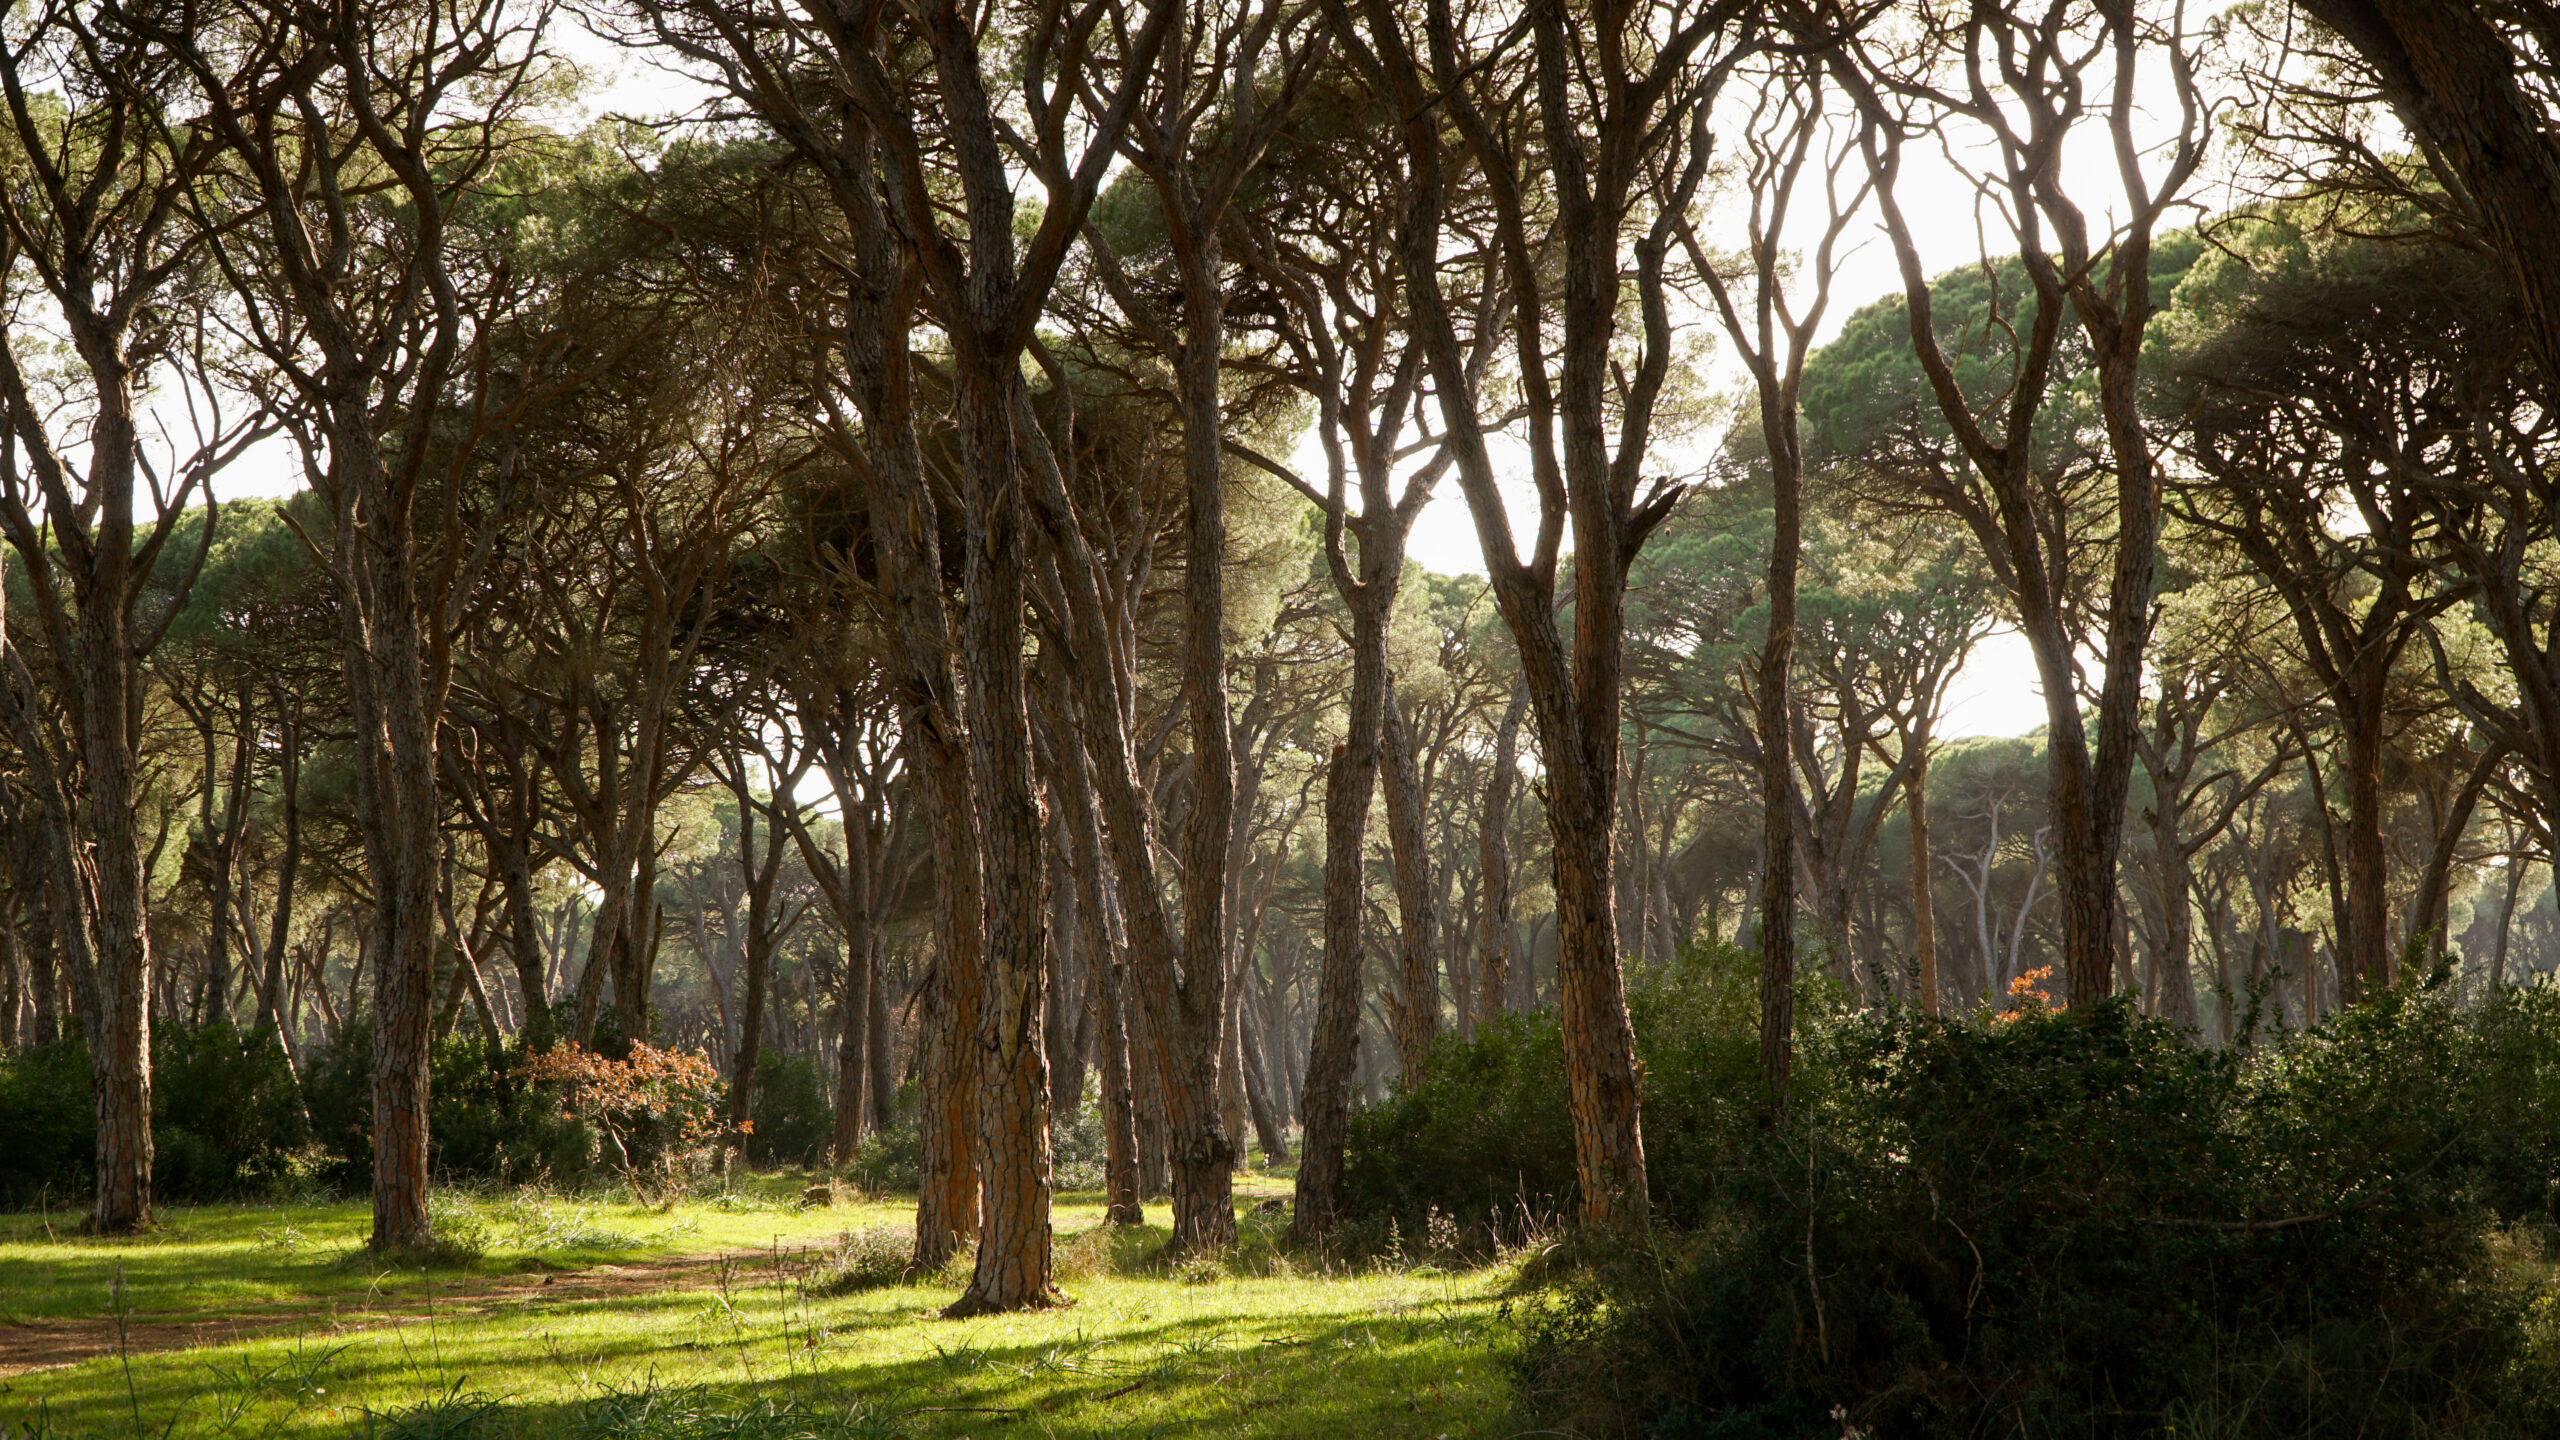 Αχαΐα: Μέρος του Εθνικού Πάρκου Στροφυλιάς μετατρέπεται σε πάρκιγνκ